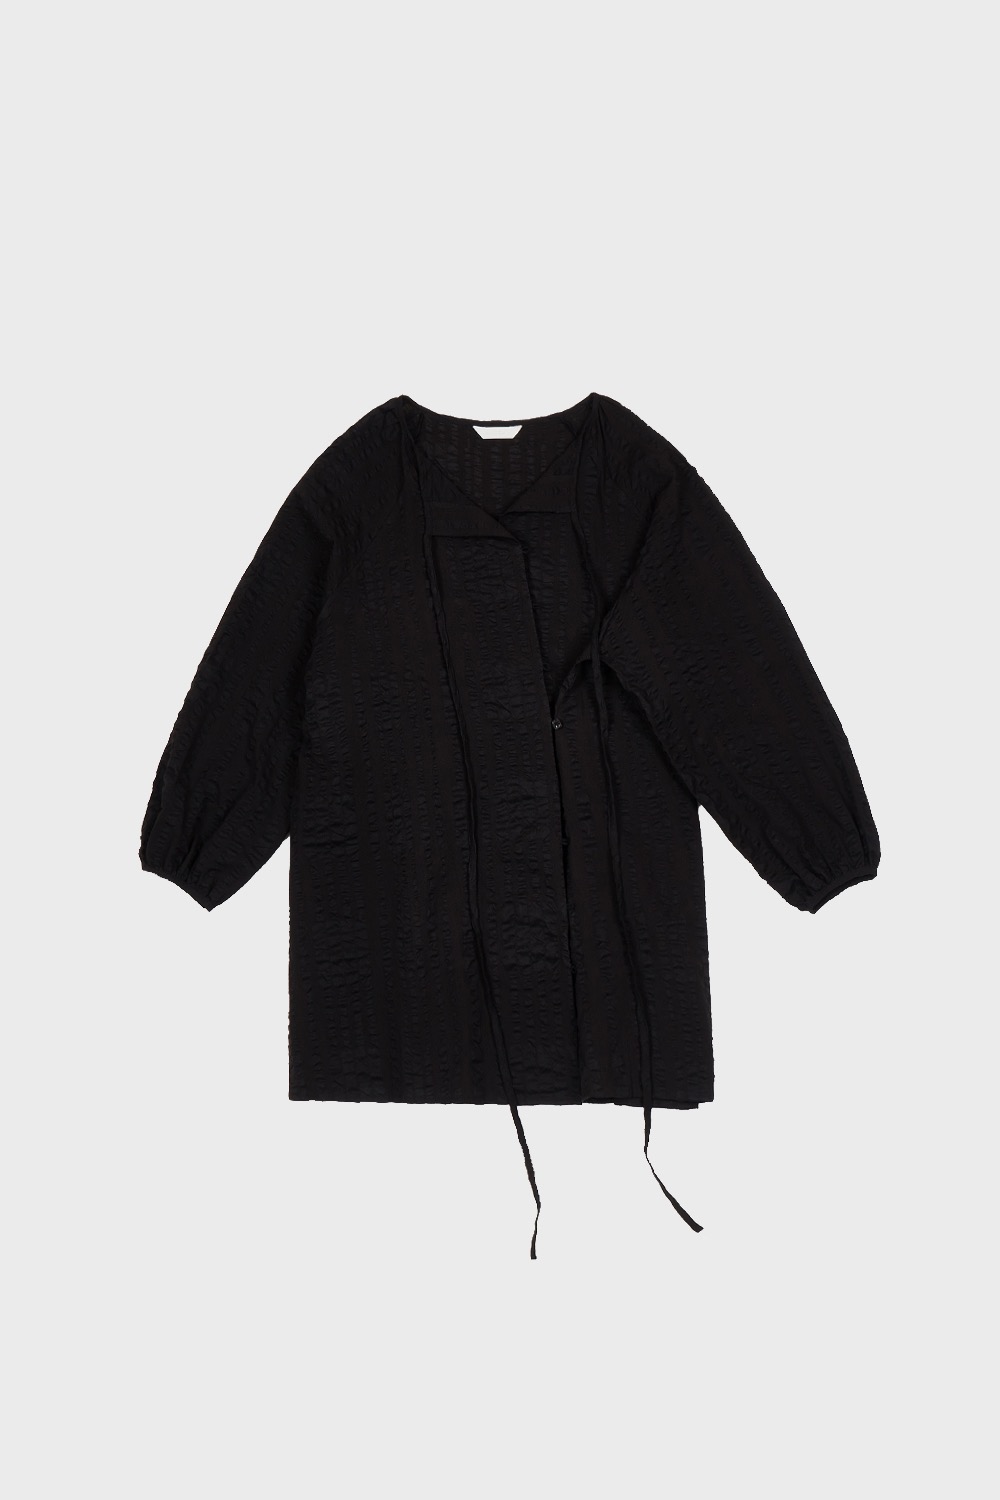 light cotton blouse (black)